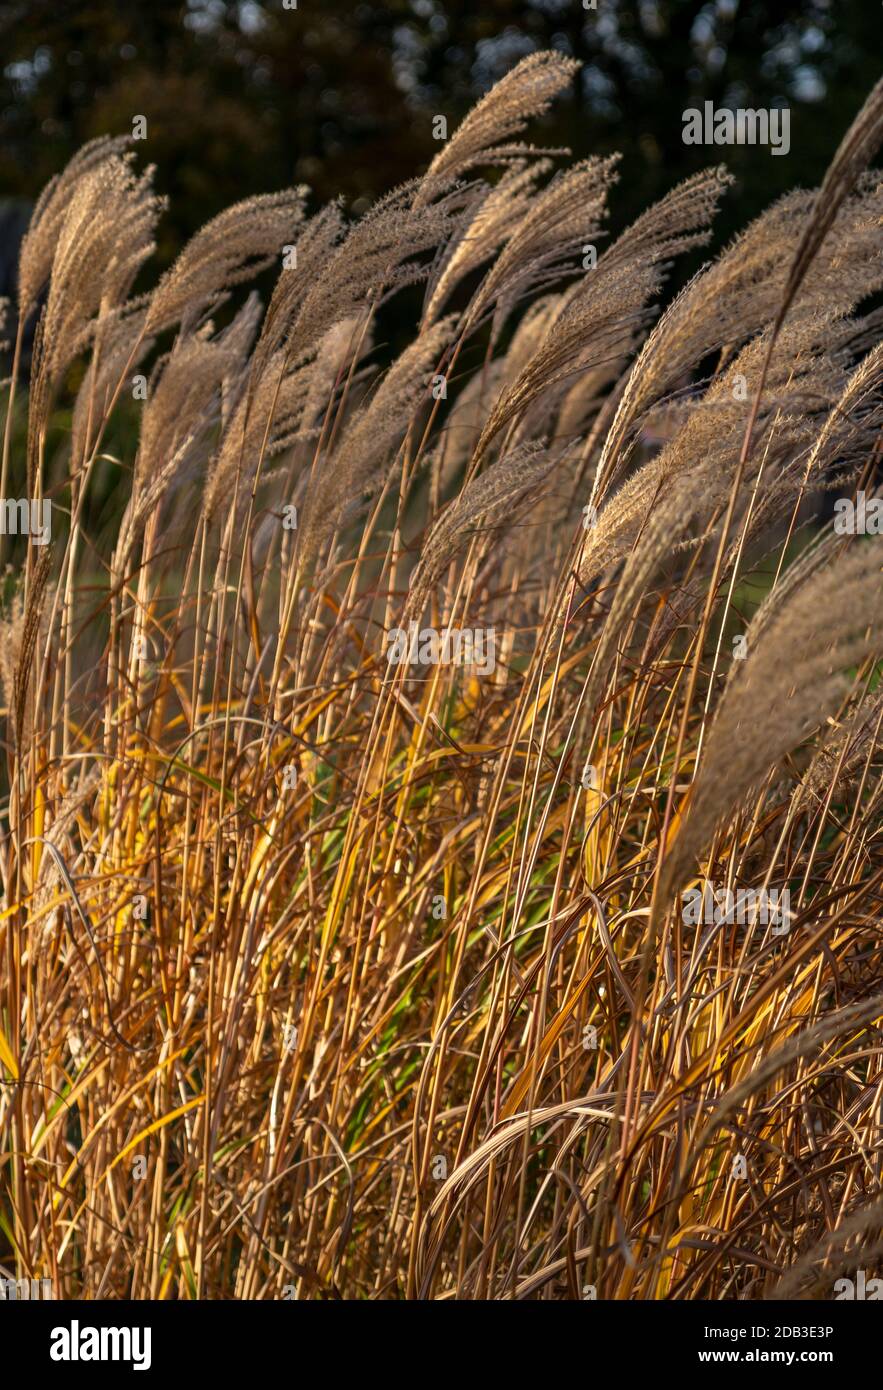 Grande herbe Miscanthus sinensis 'Positano' soufflant dans le vent dans la  lumière dorée du soir. Graminées vivaces rhizomates avec tiges lignifiées.  Verticale Photo Stock - Alamy